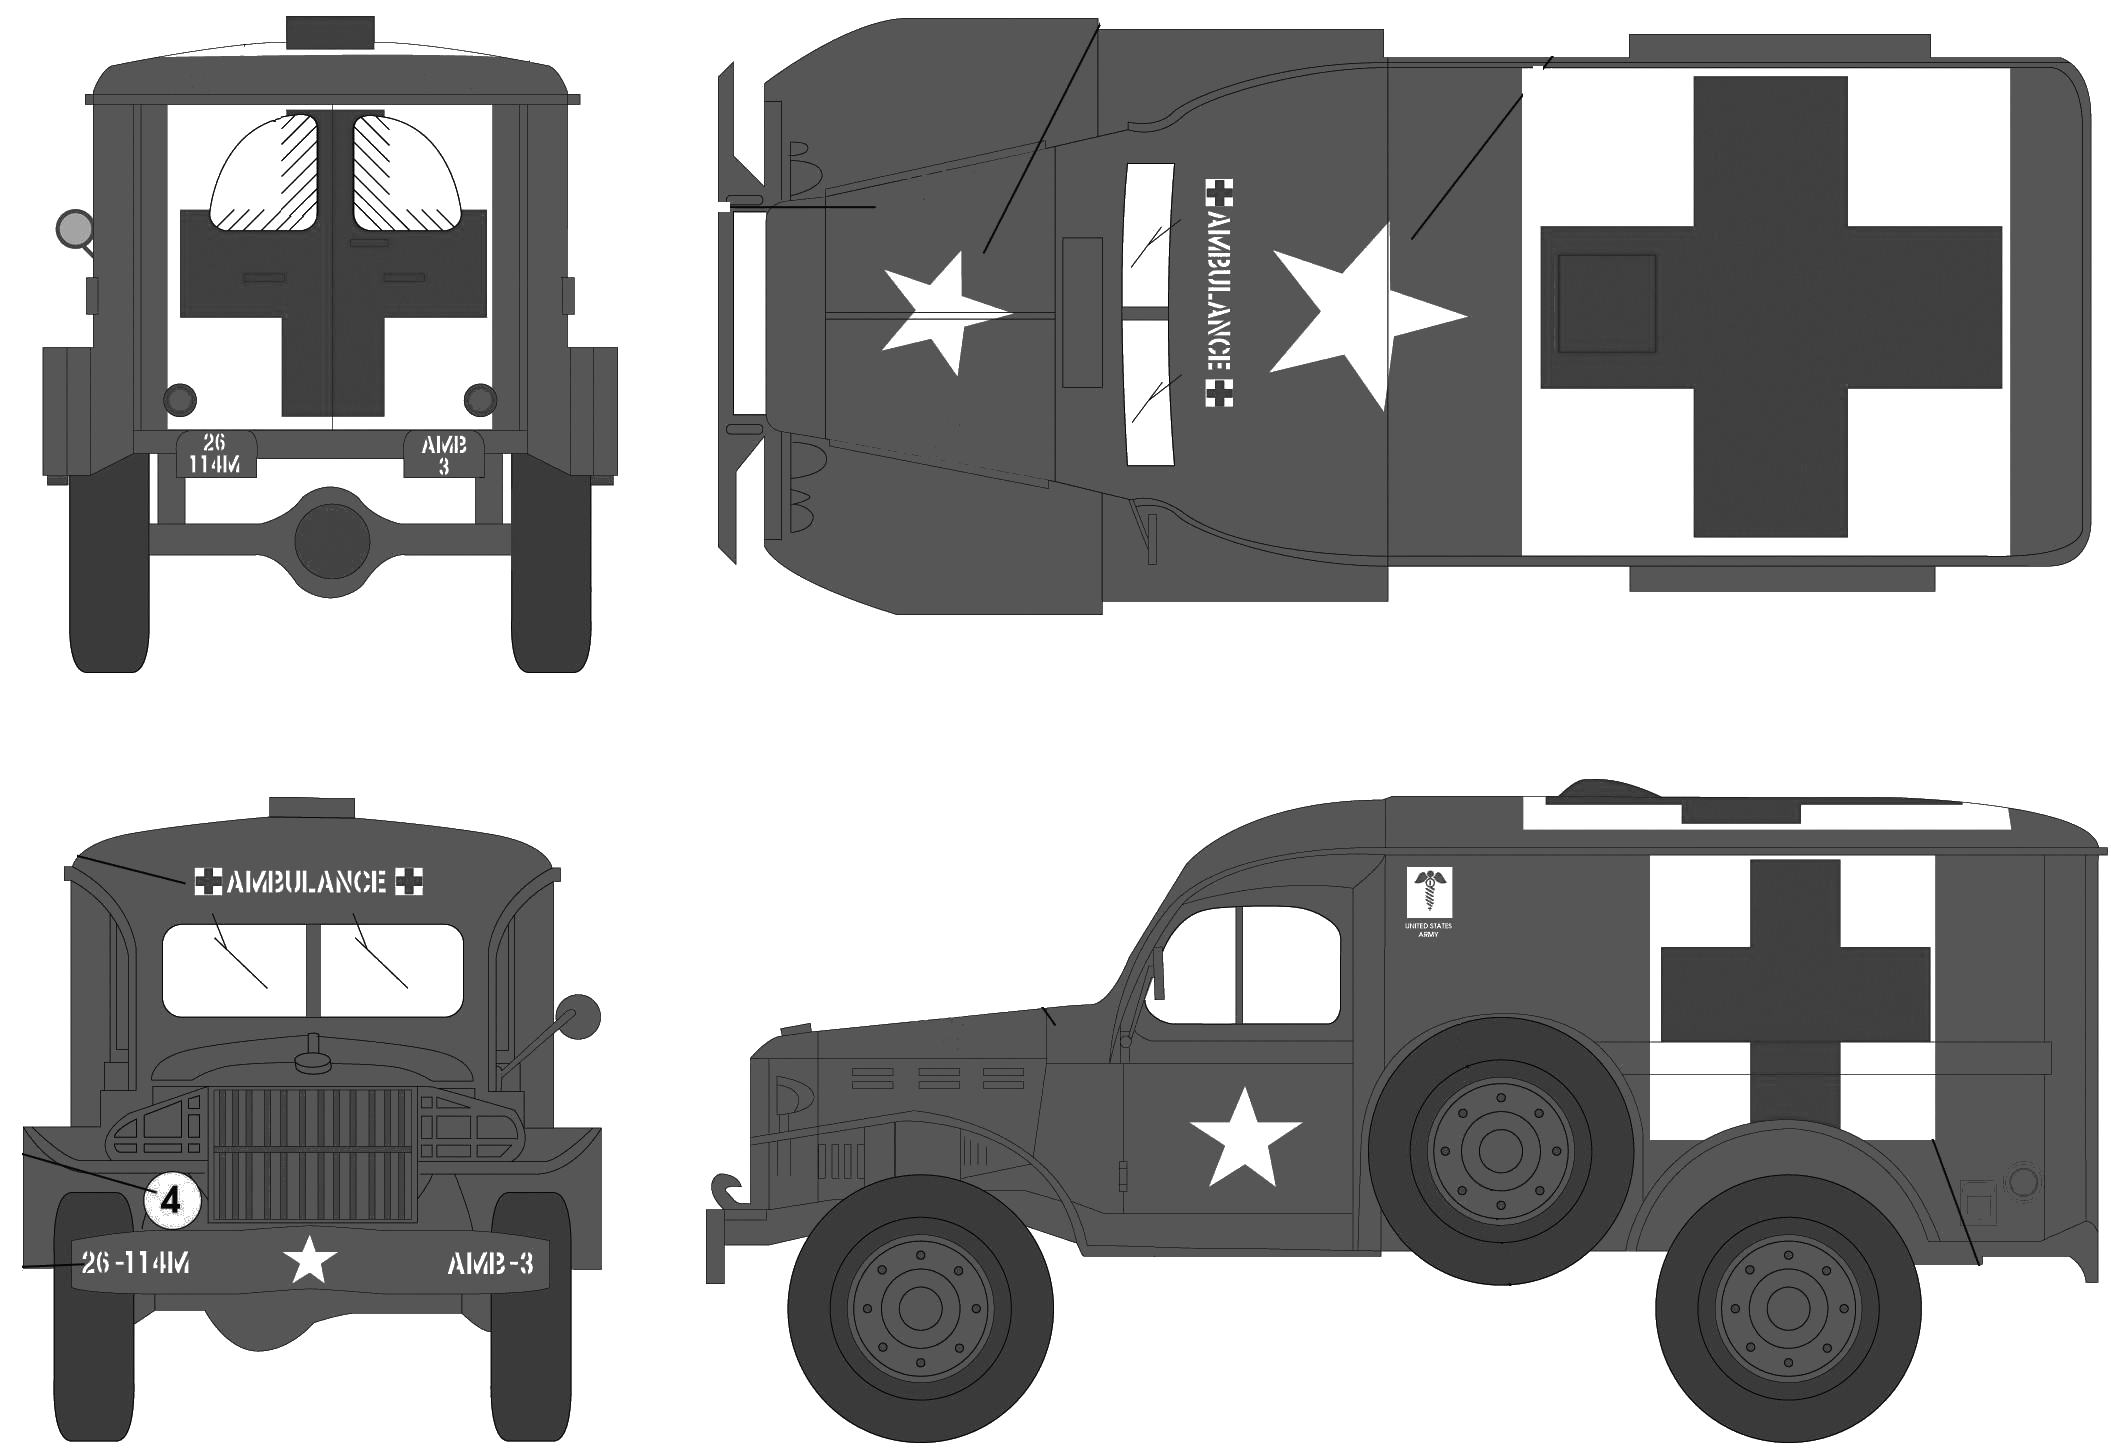 Modèle de fourgon d'ambulance Dodge WC-54 1940